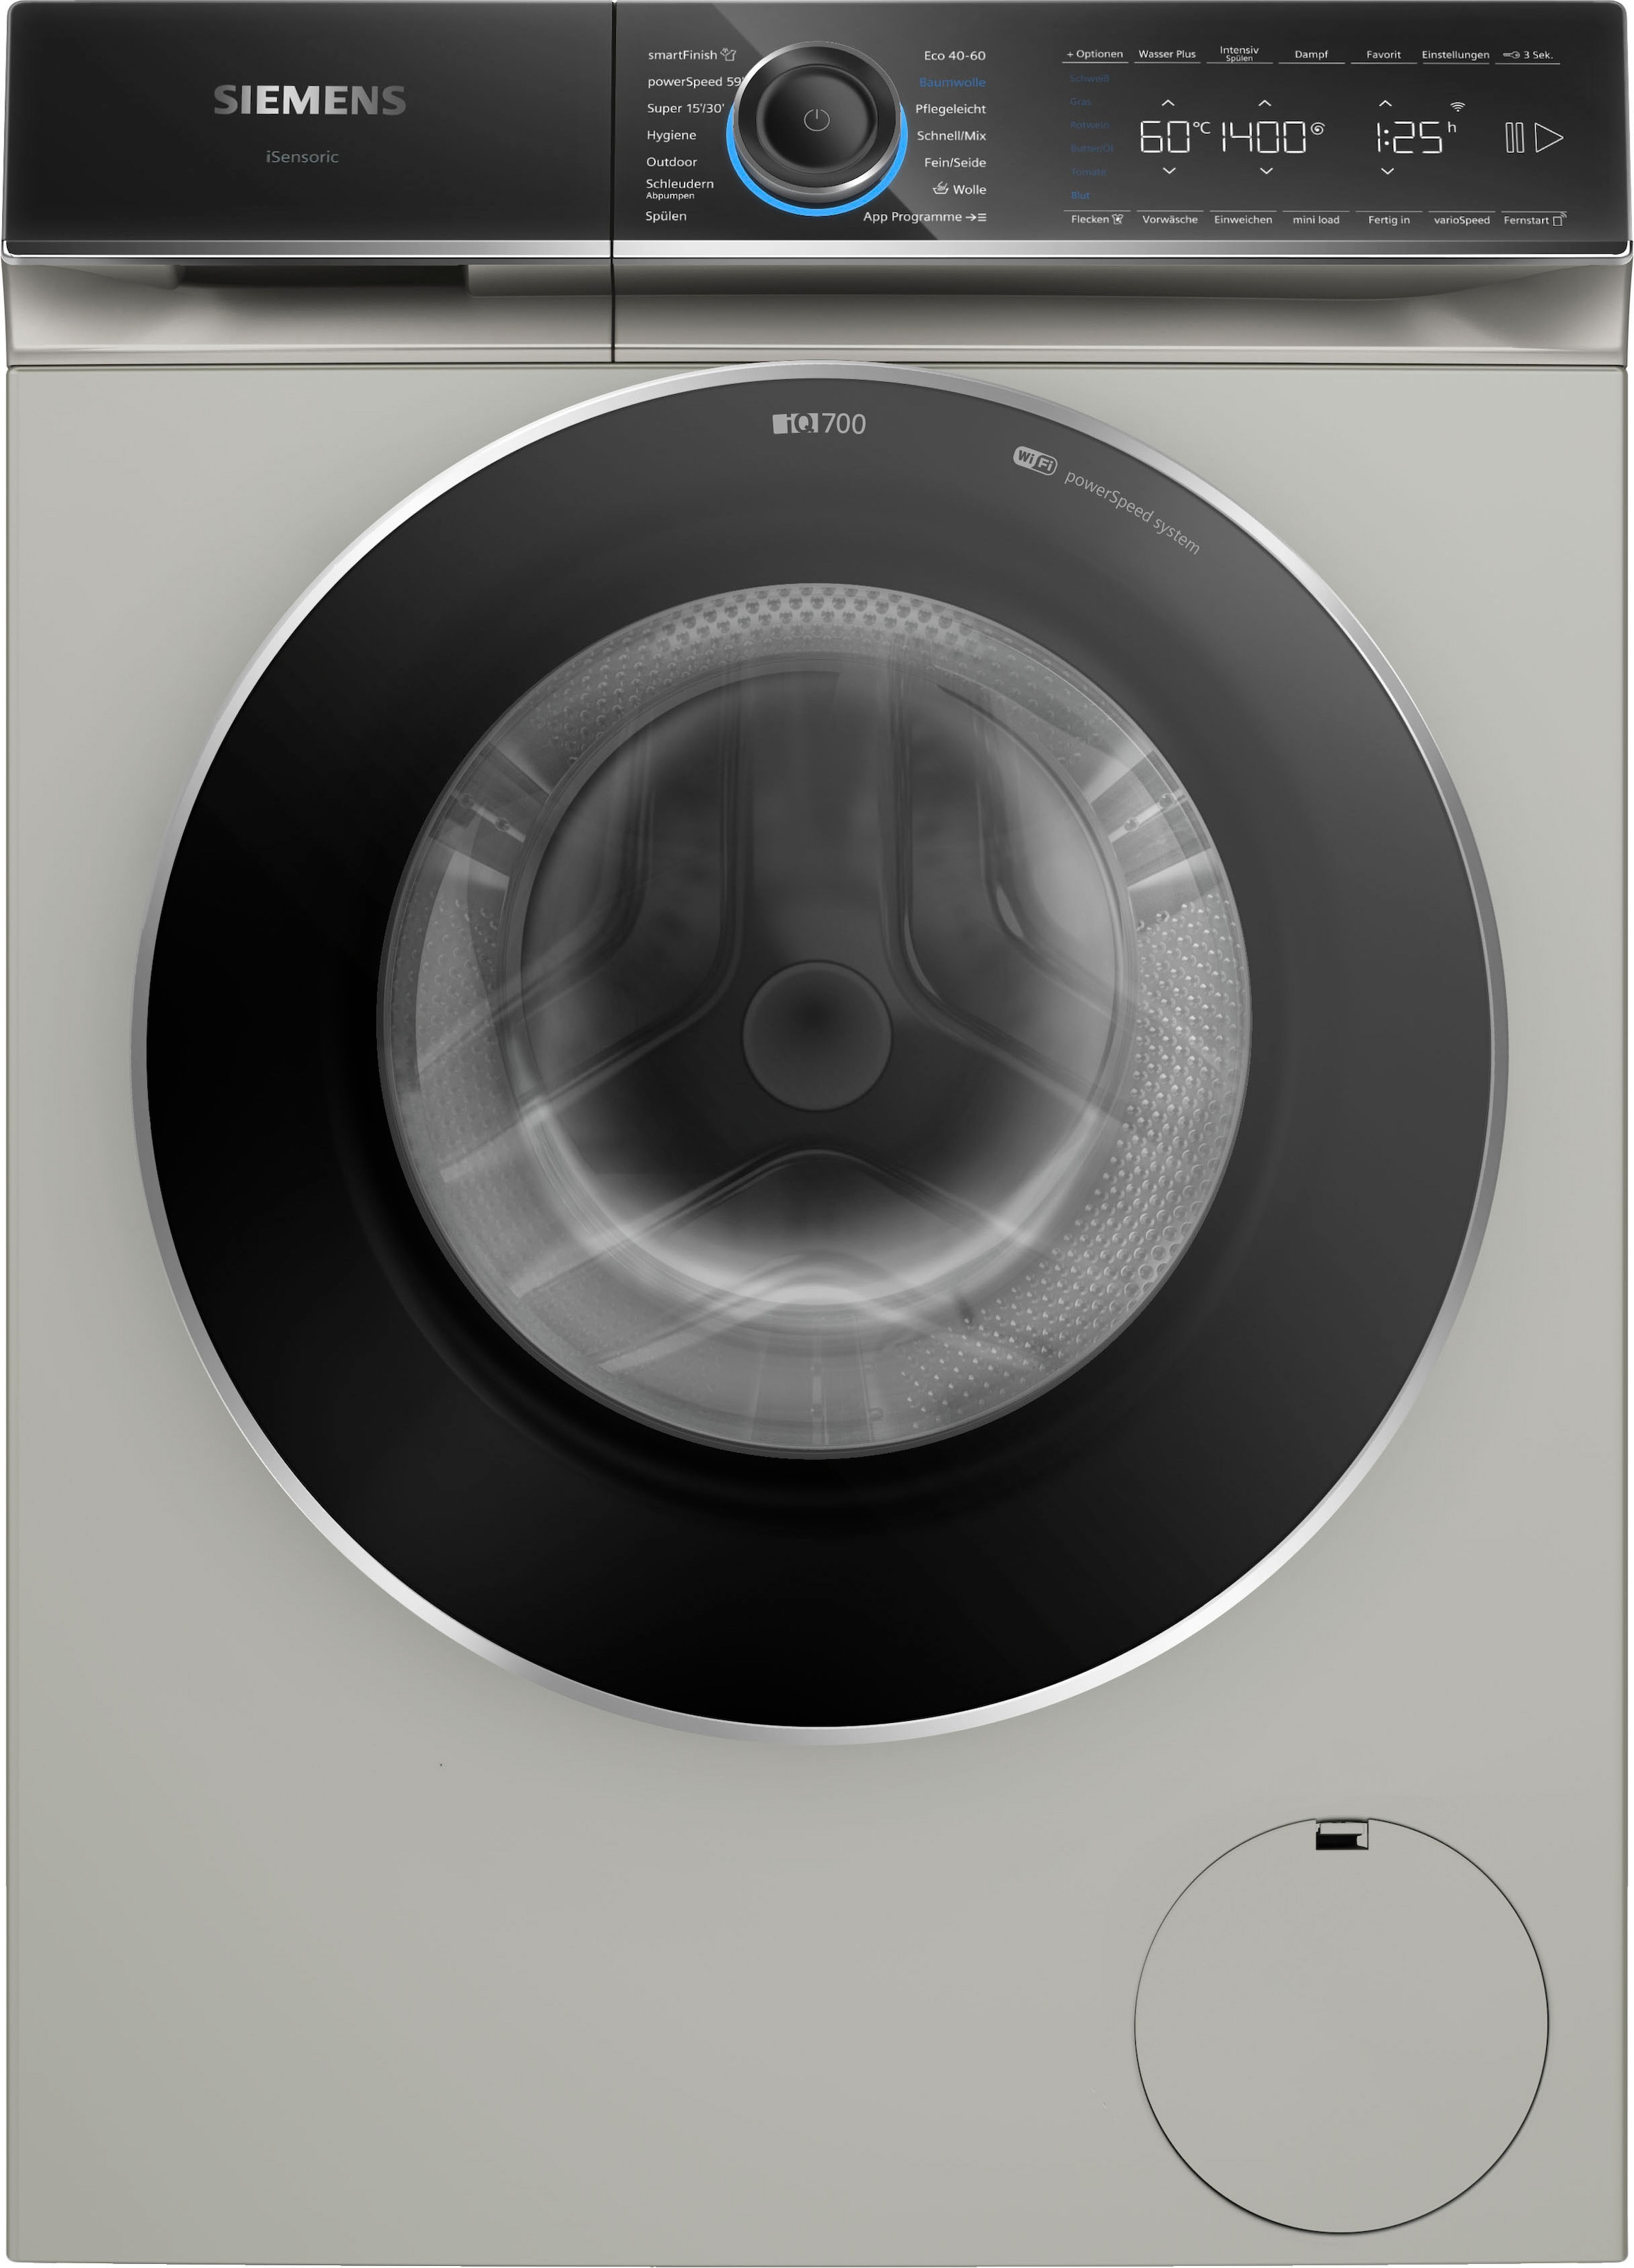 Waschmaschine sämtliche smartFinish 1400 3 U/min, 9 kg, WG44B20X40, dank SIEMENS Knitterfalten Dampf Garantie – »WG44B20X40«, Jahren glättet XXL mit